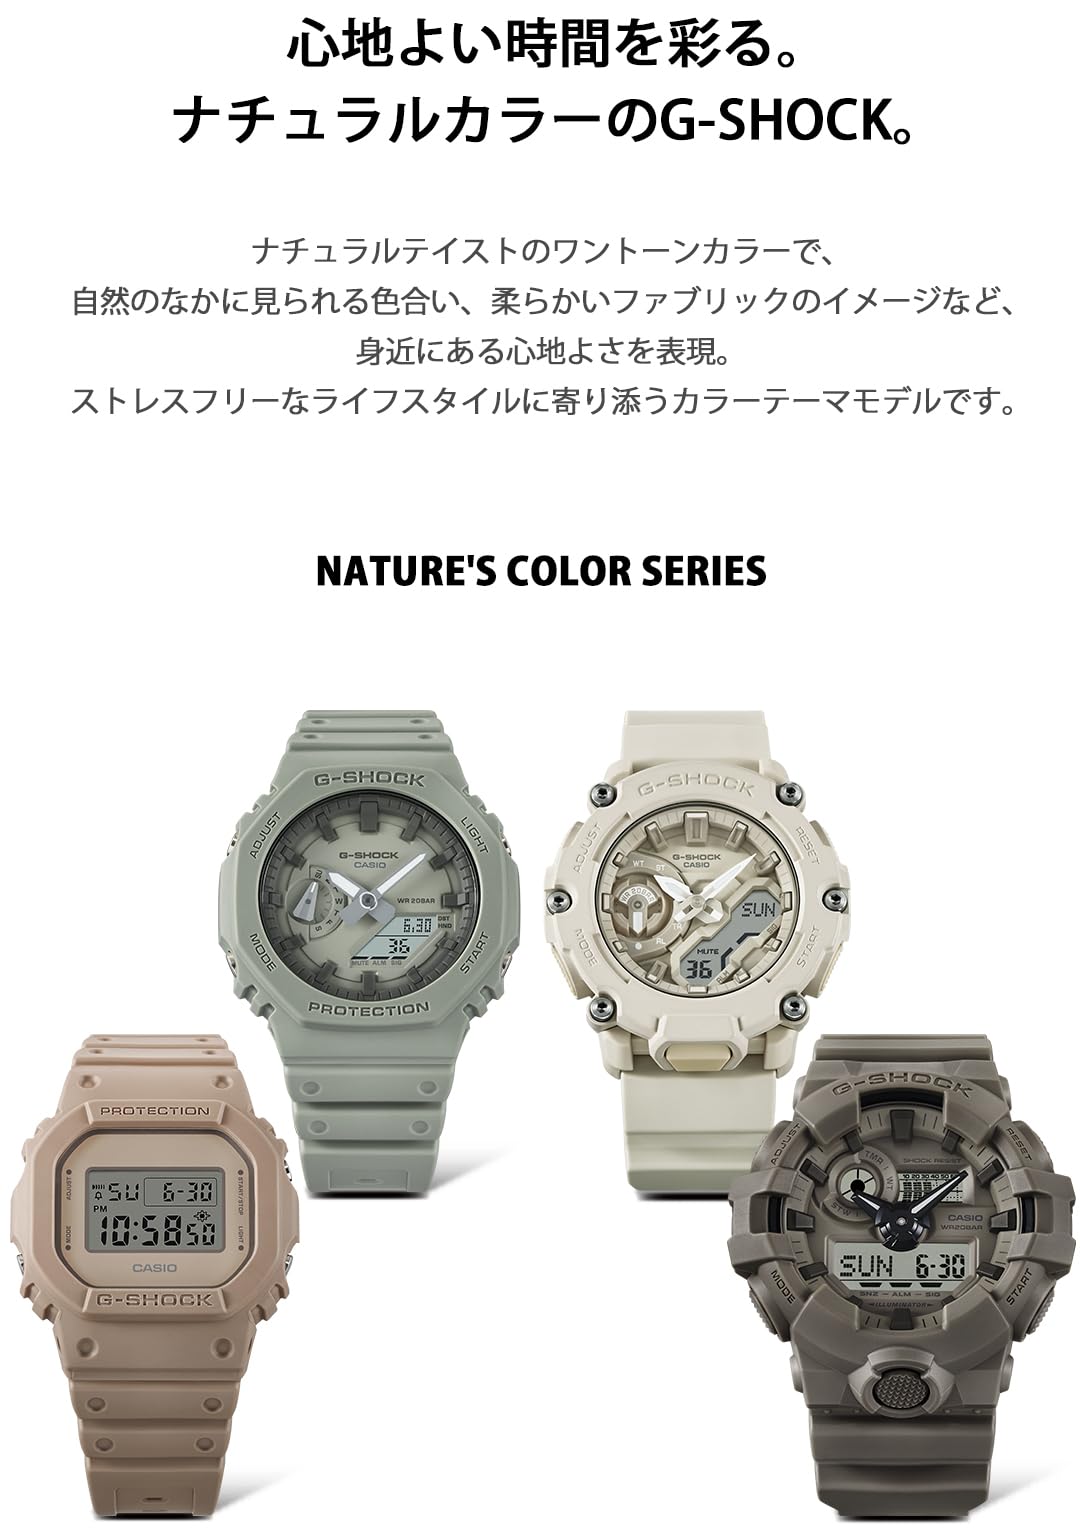 [カシオ] 腕時計 ジーショック 【国内正規品】 Natural colorシリーズ GA-2100NC-3AJF メンズ カーキー - BanzaiHobby